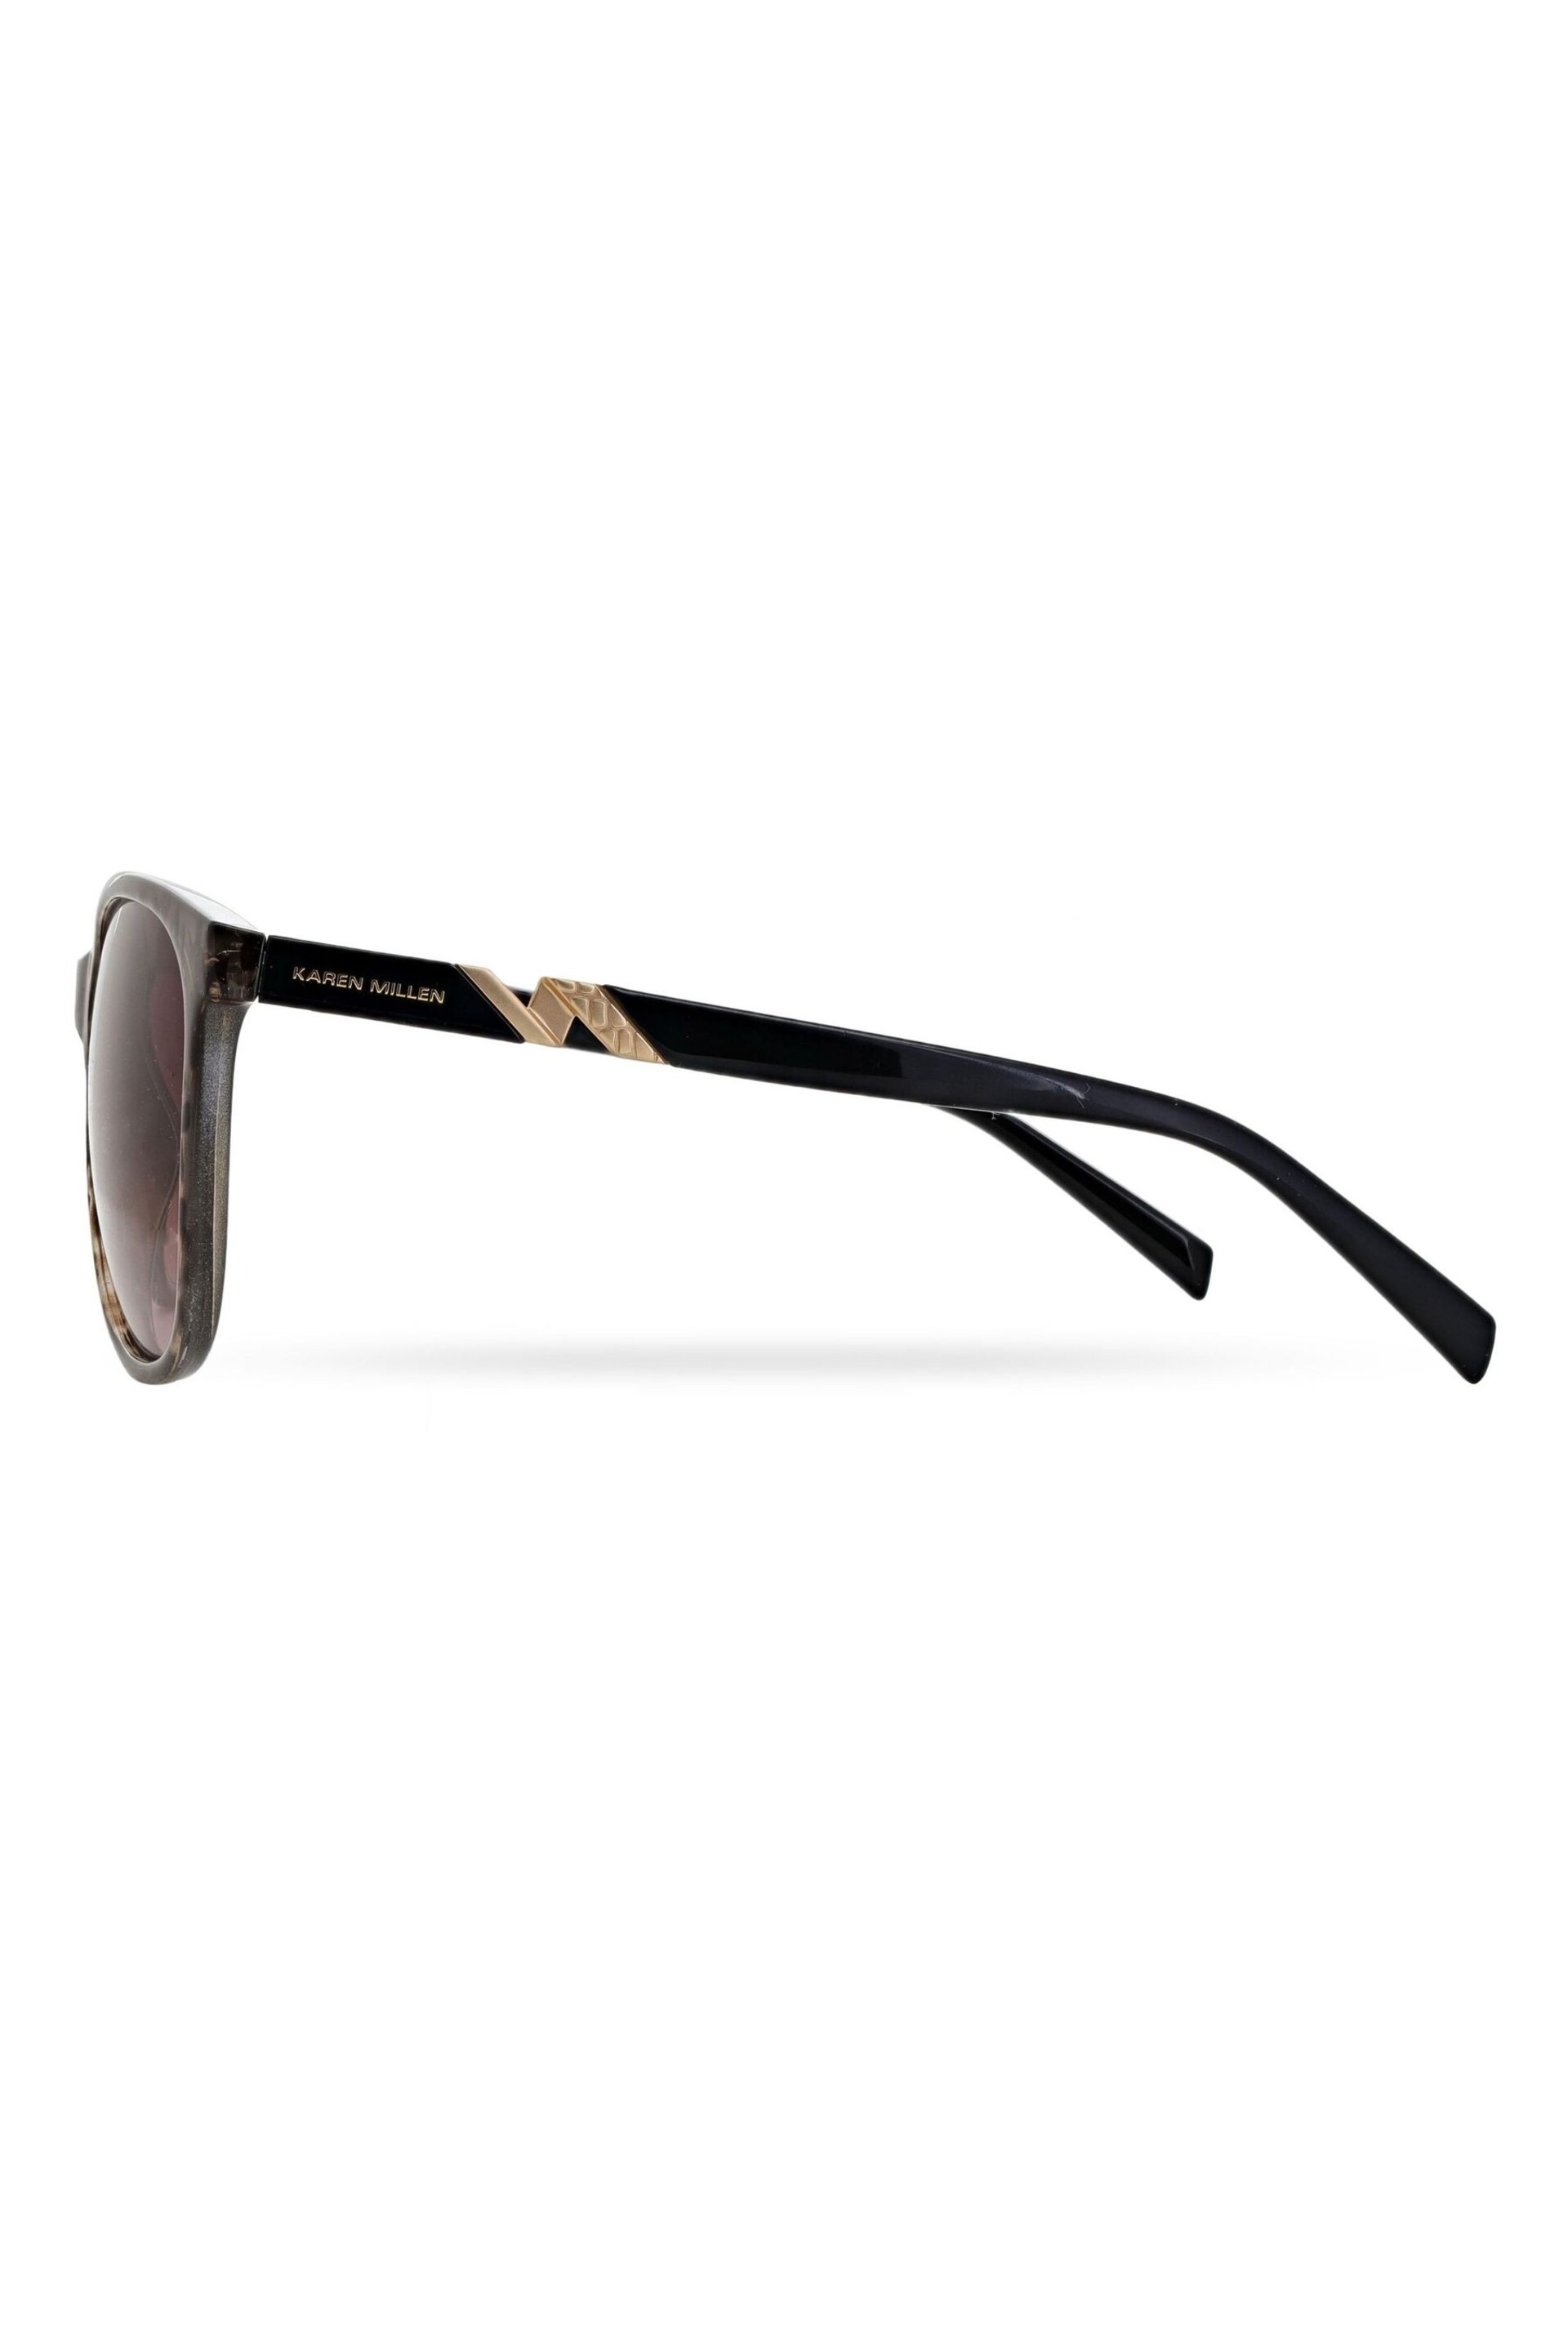 Karen Millen KM5057 Brown Sunglasses - Image 3 of 5